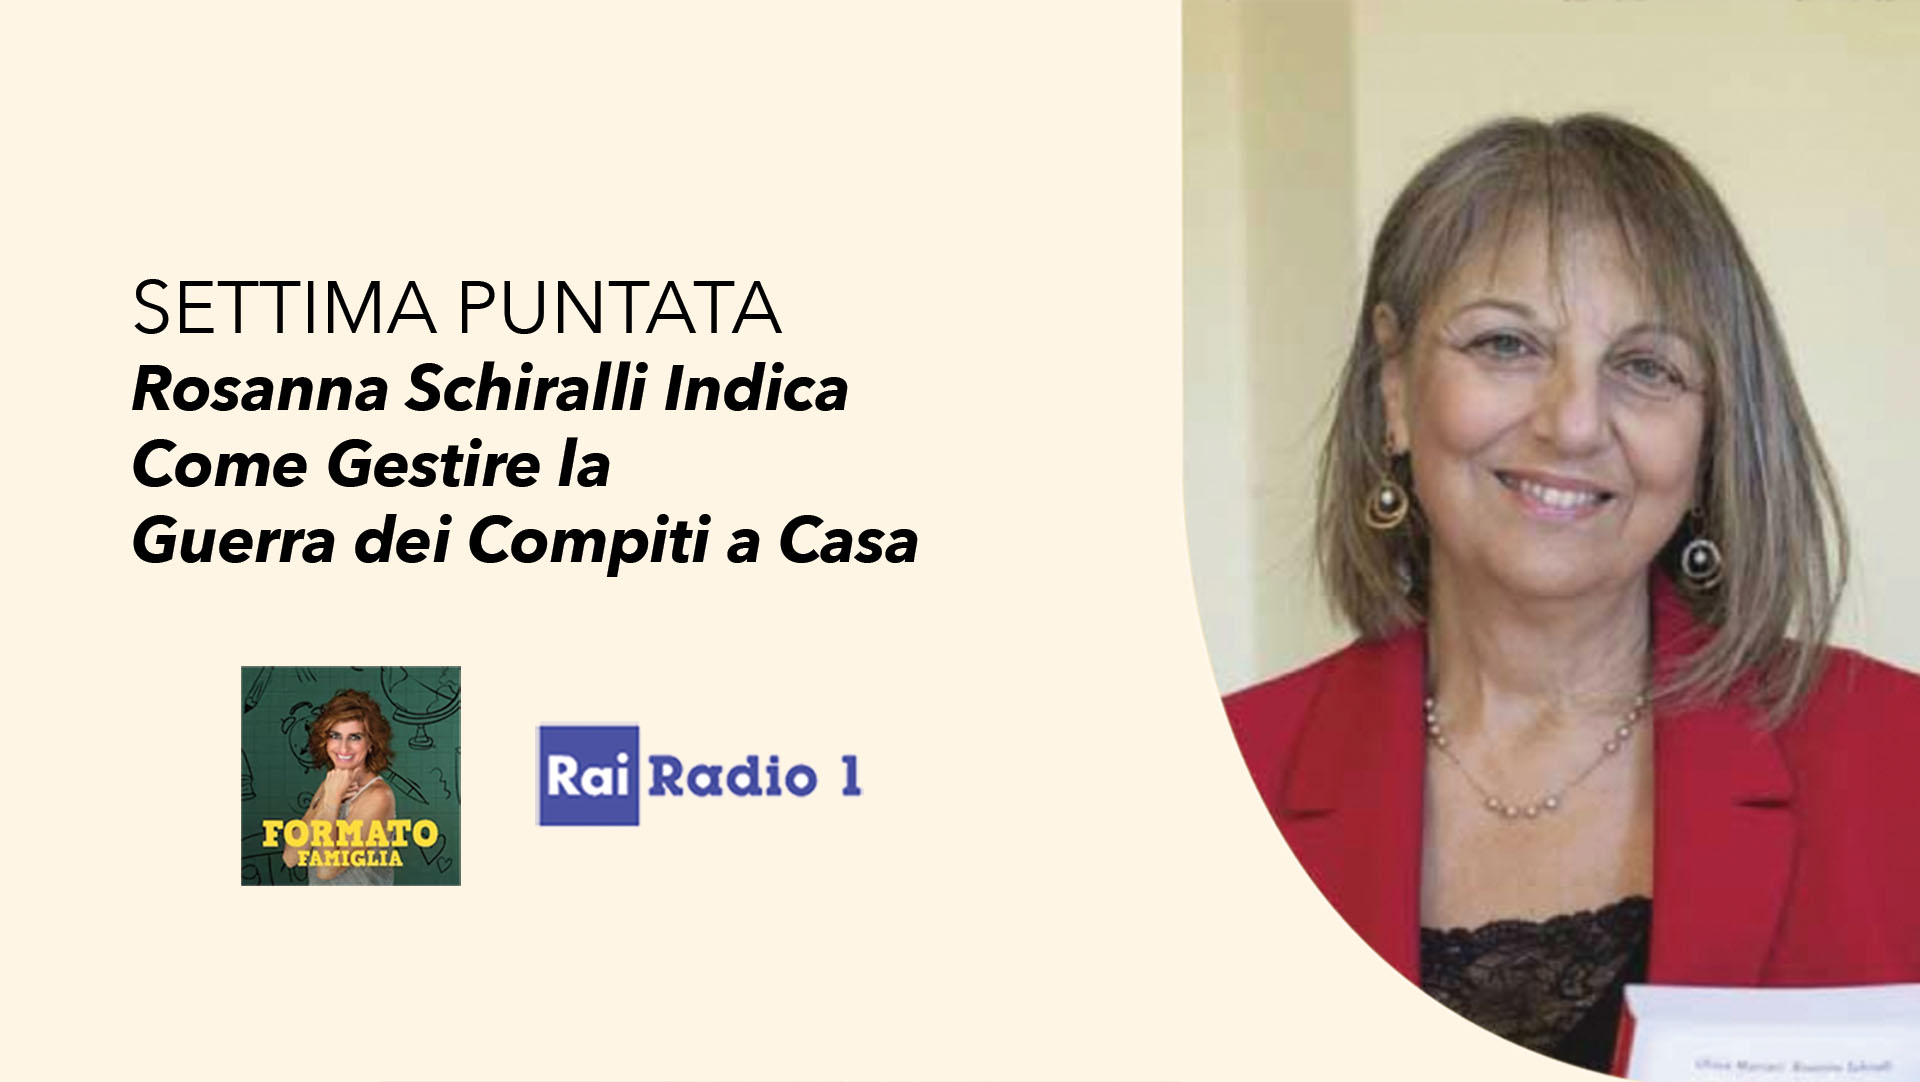 Compiti a casa - Rai Radio 1 - Rosanna Schiralli Indica Come Gestire la Guerra dei Compiti a Casa